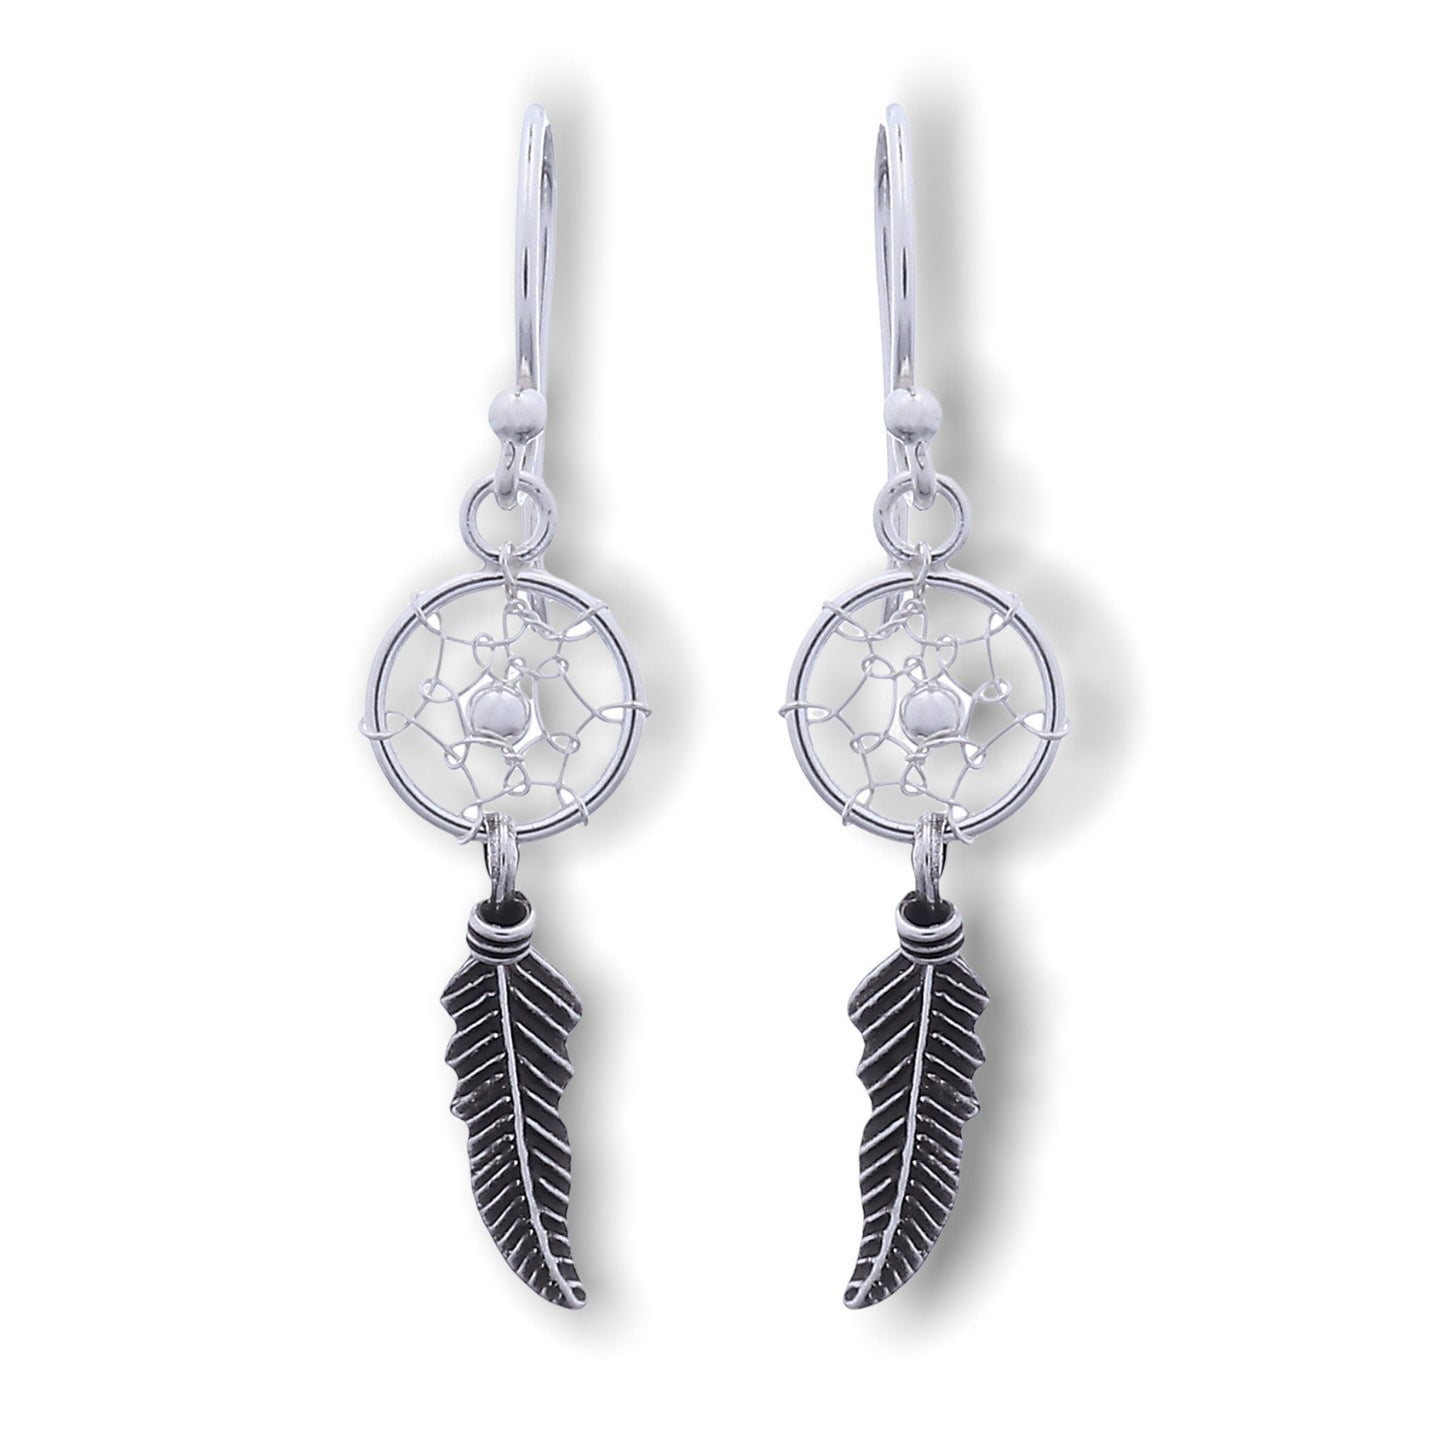 Dream Catcher Earrings - 925 Sterling Silver Tribal Boho Shaman Indian Jewelry - Ear925-42